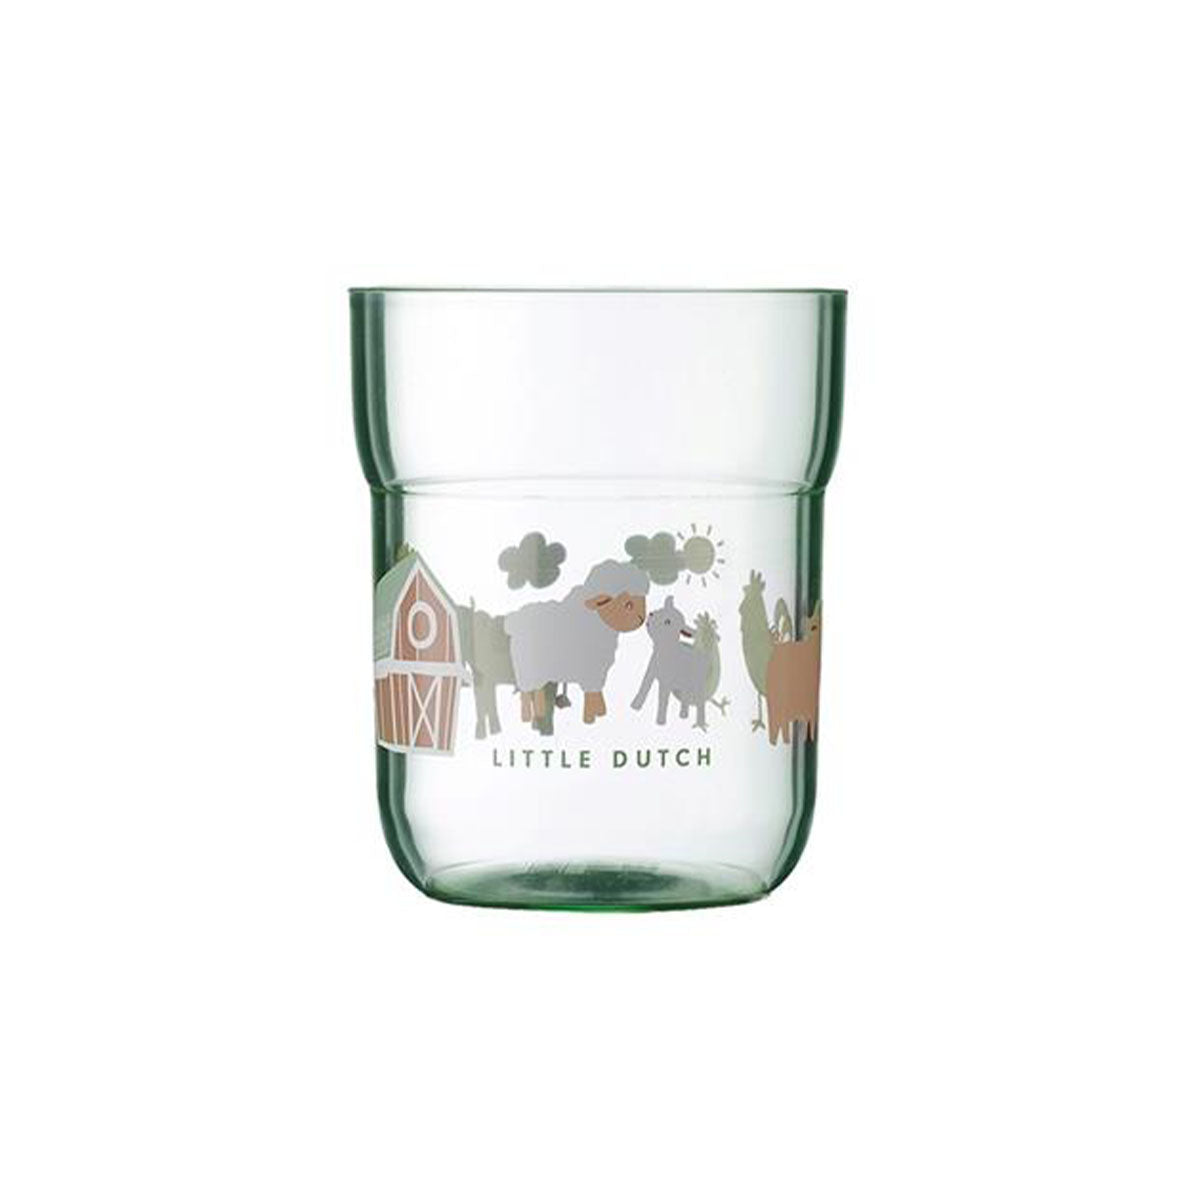 Het kunststof mepal mio kinderglas van Little Dutch is ideaal als je kindje net leert drinken. Het glas uit de  little farm collectie heeft een groene tint en dierenprint. Stapelbaar en geschikt voor vaatwasser. VanZus